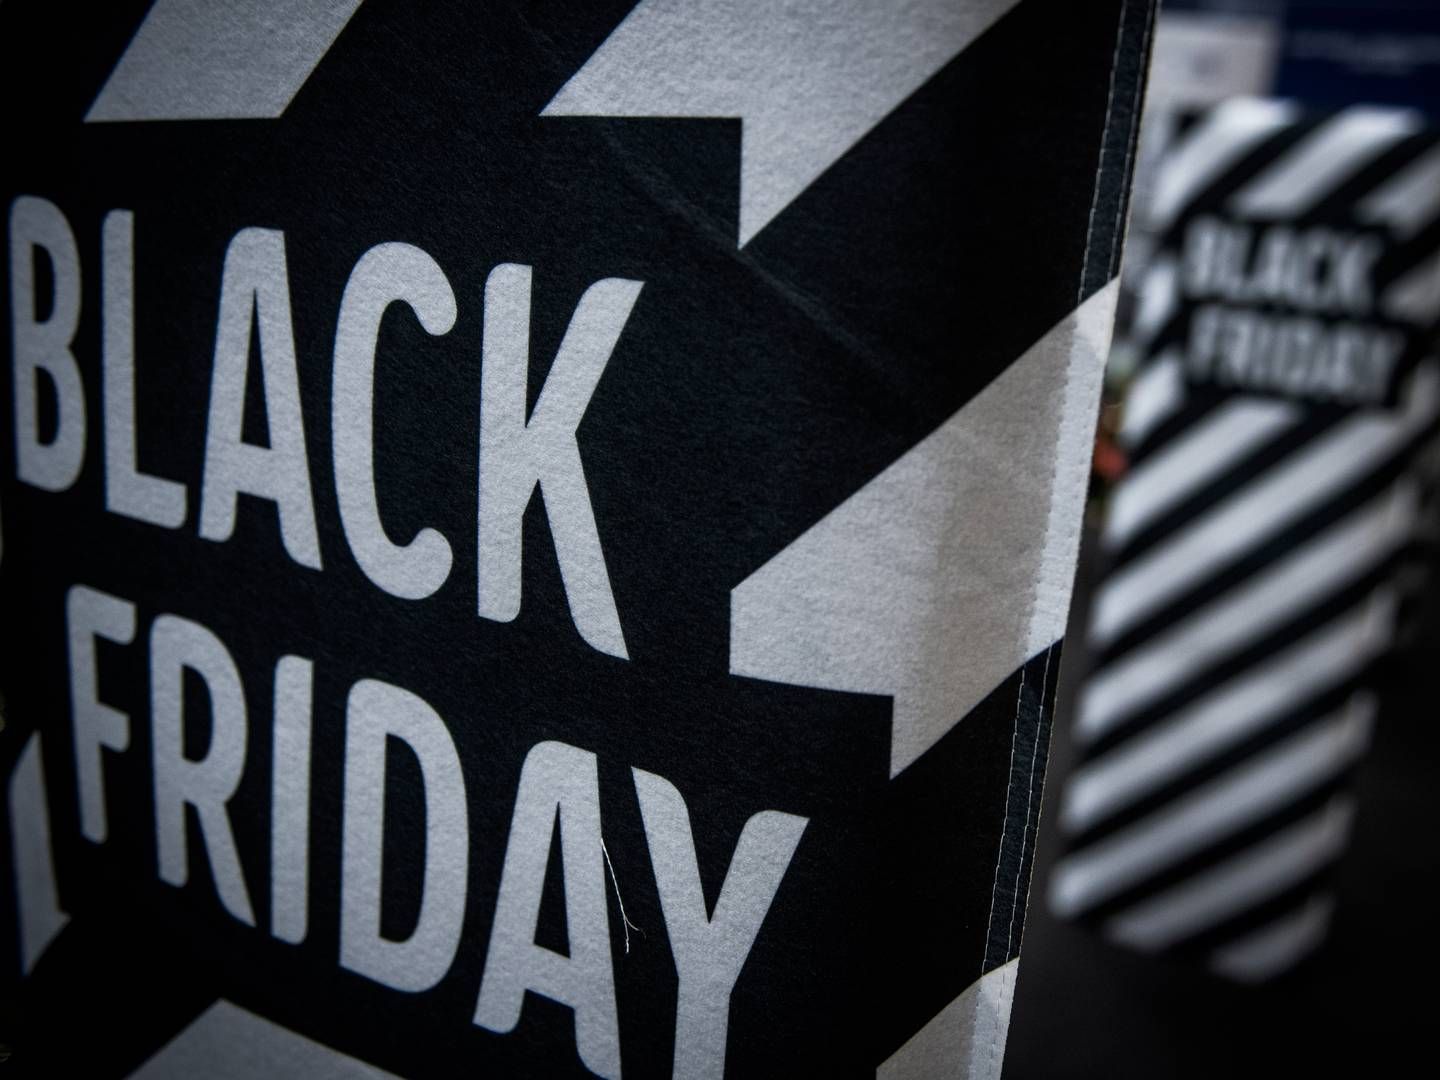 Black friday falder i år på fredag den 24. november. Derfor er den såkaldte black week også i fuld gang. | Foto: Jonas Olufson